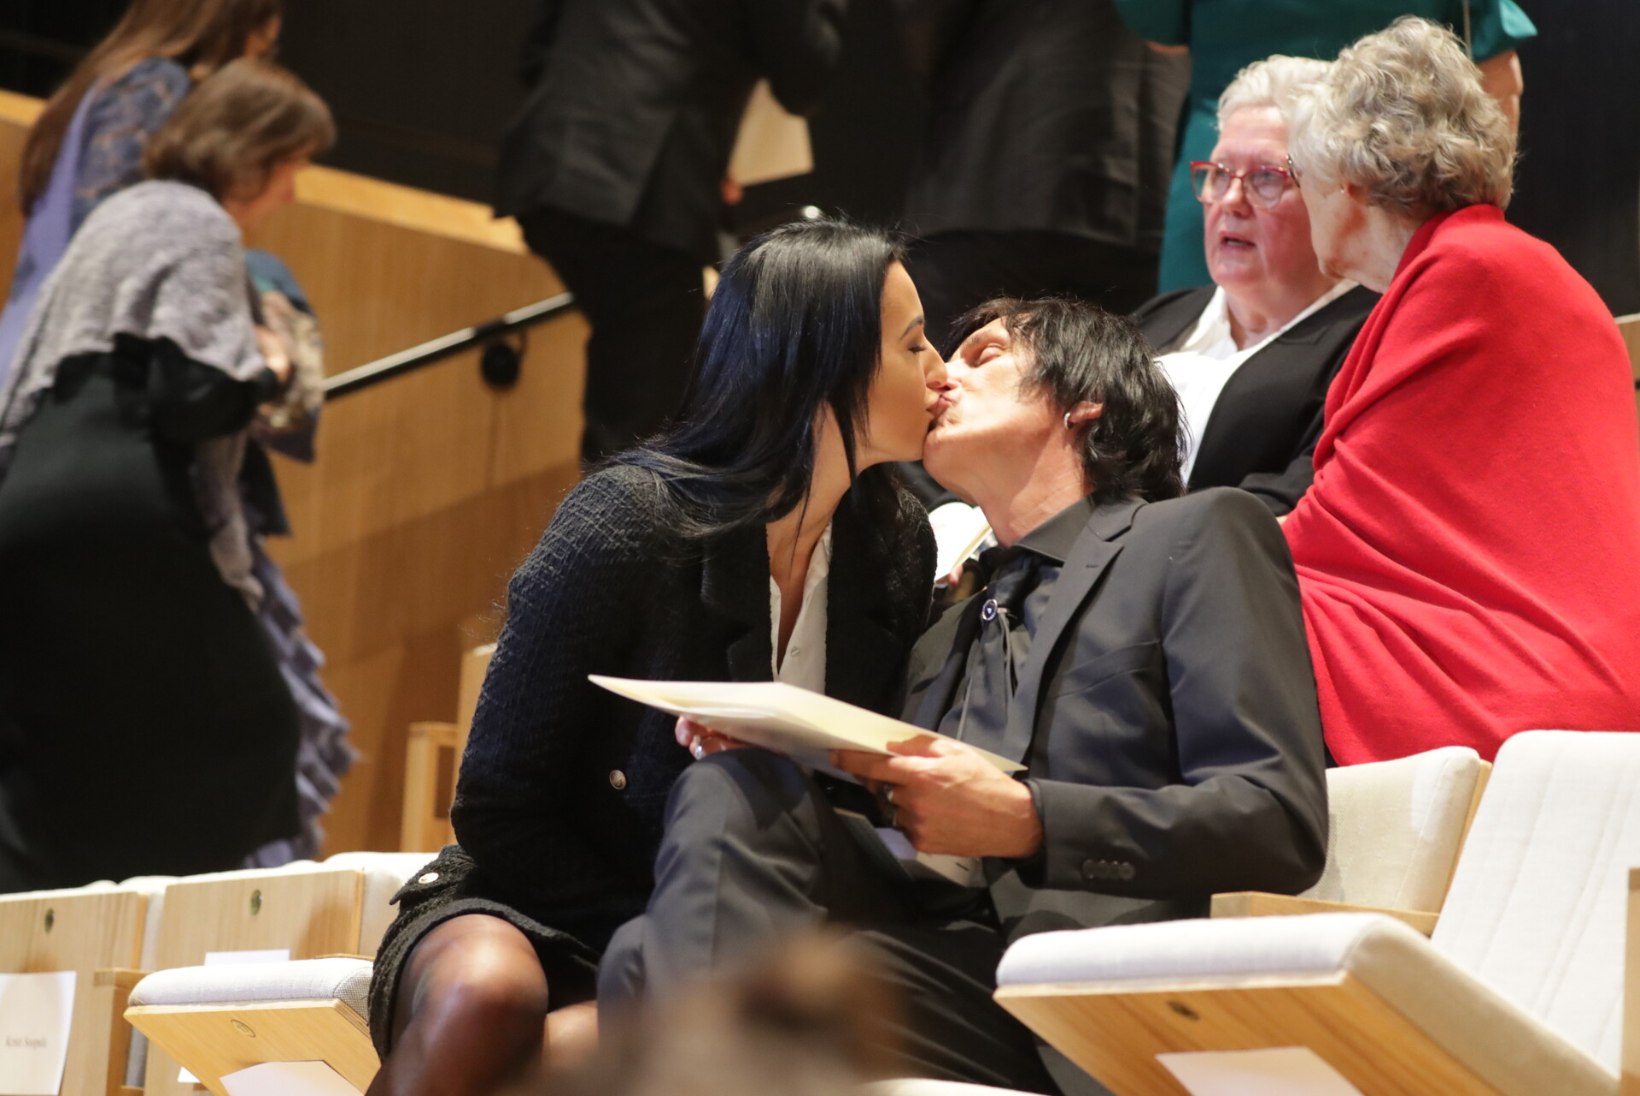 FOTO | Kuum suudlus! Hendrik Sal-Saller saabus teenetemärgi jagamisele koos noore kallimaga